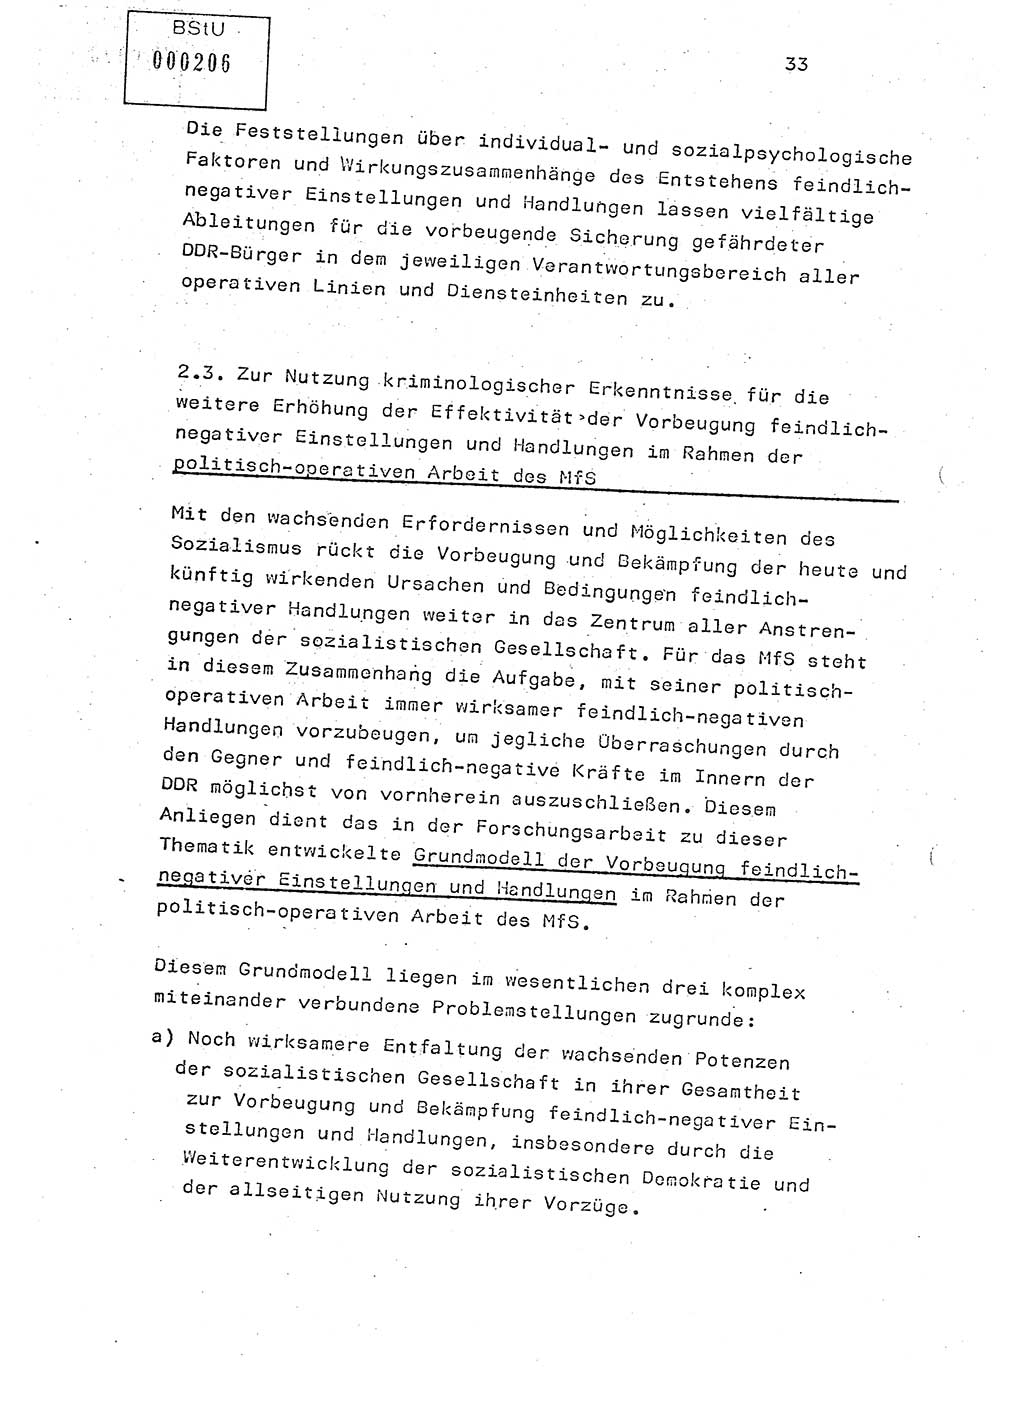 Studienmaterial Ministerium für Staatssicherheit (MfS) [Deutsche Demokratische Republik (DDR)], Hauptabteilung (HA) Ⅸ/ Auswertungs- und Kontrollgruppe (AKG), Berlin ca. 1986, Seite 33 (Stud.-Mat. MfS DDR HA Ⅸ/AKG 1986, S. 33)